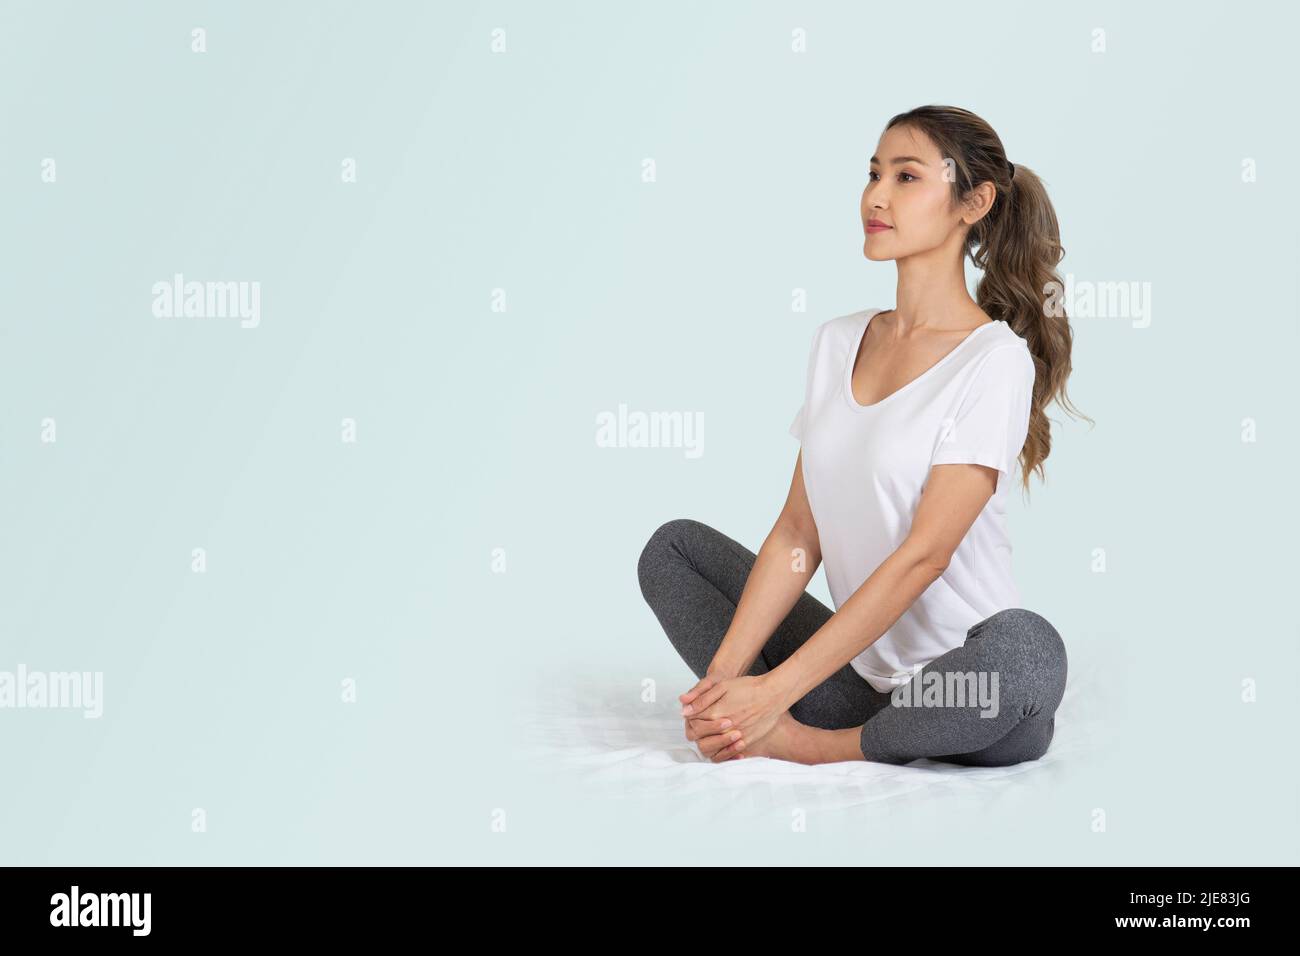 Foto isolata di una donna seduta sul pavimento che fa tratti o yoga per un concetto sano. Foto Stock